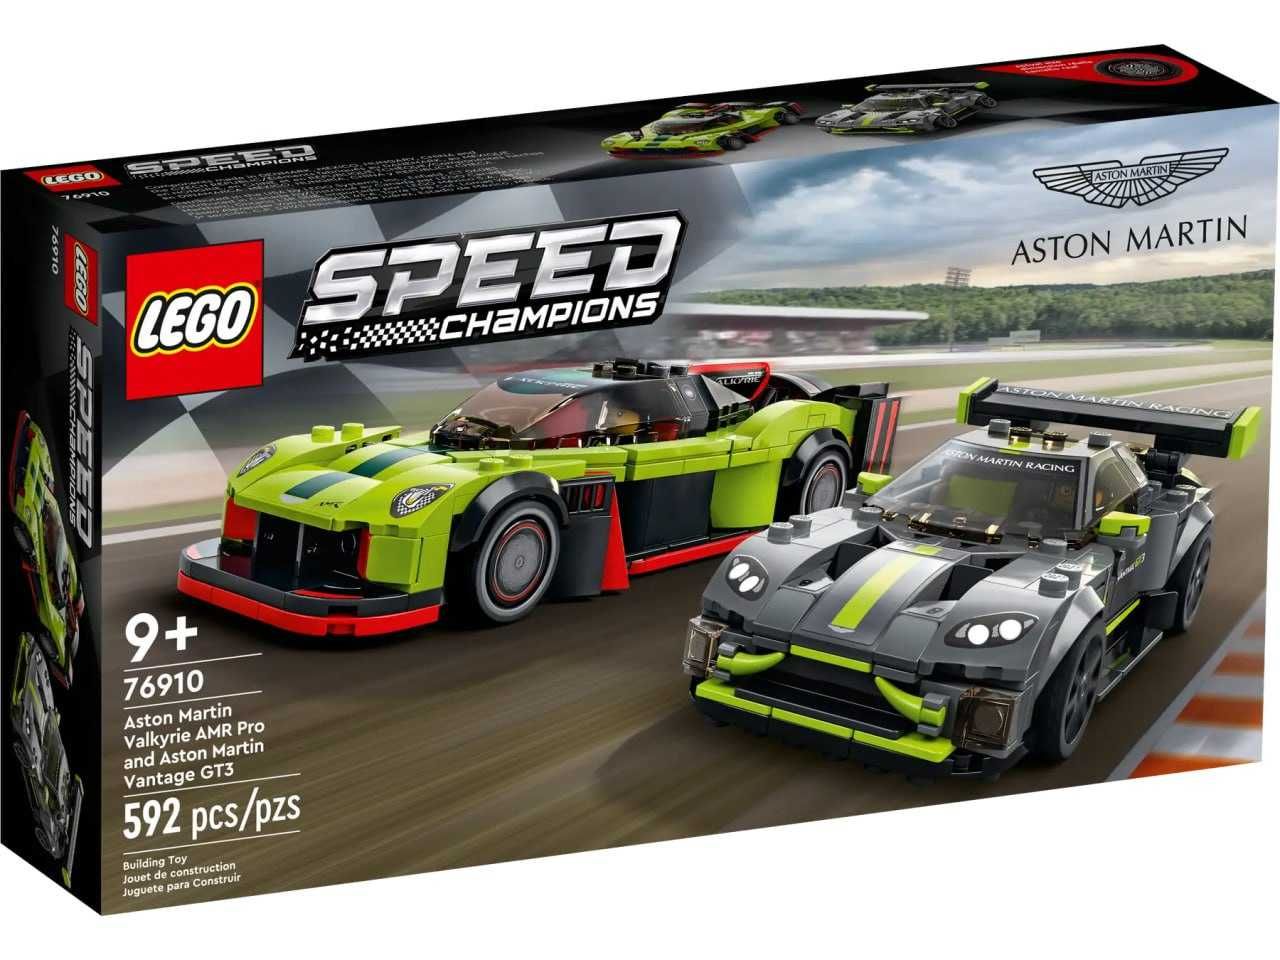 LEGO: Aston Martin Valkyrie AMR Pro & Aston Martin Vantage GT3 (76910)